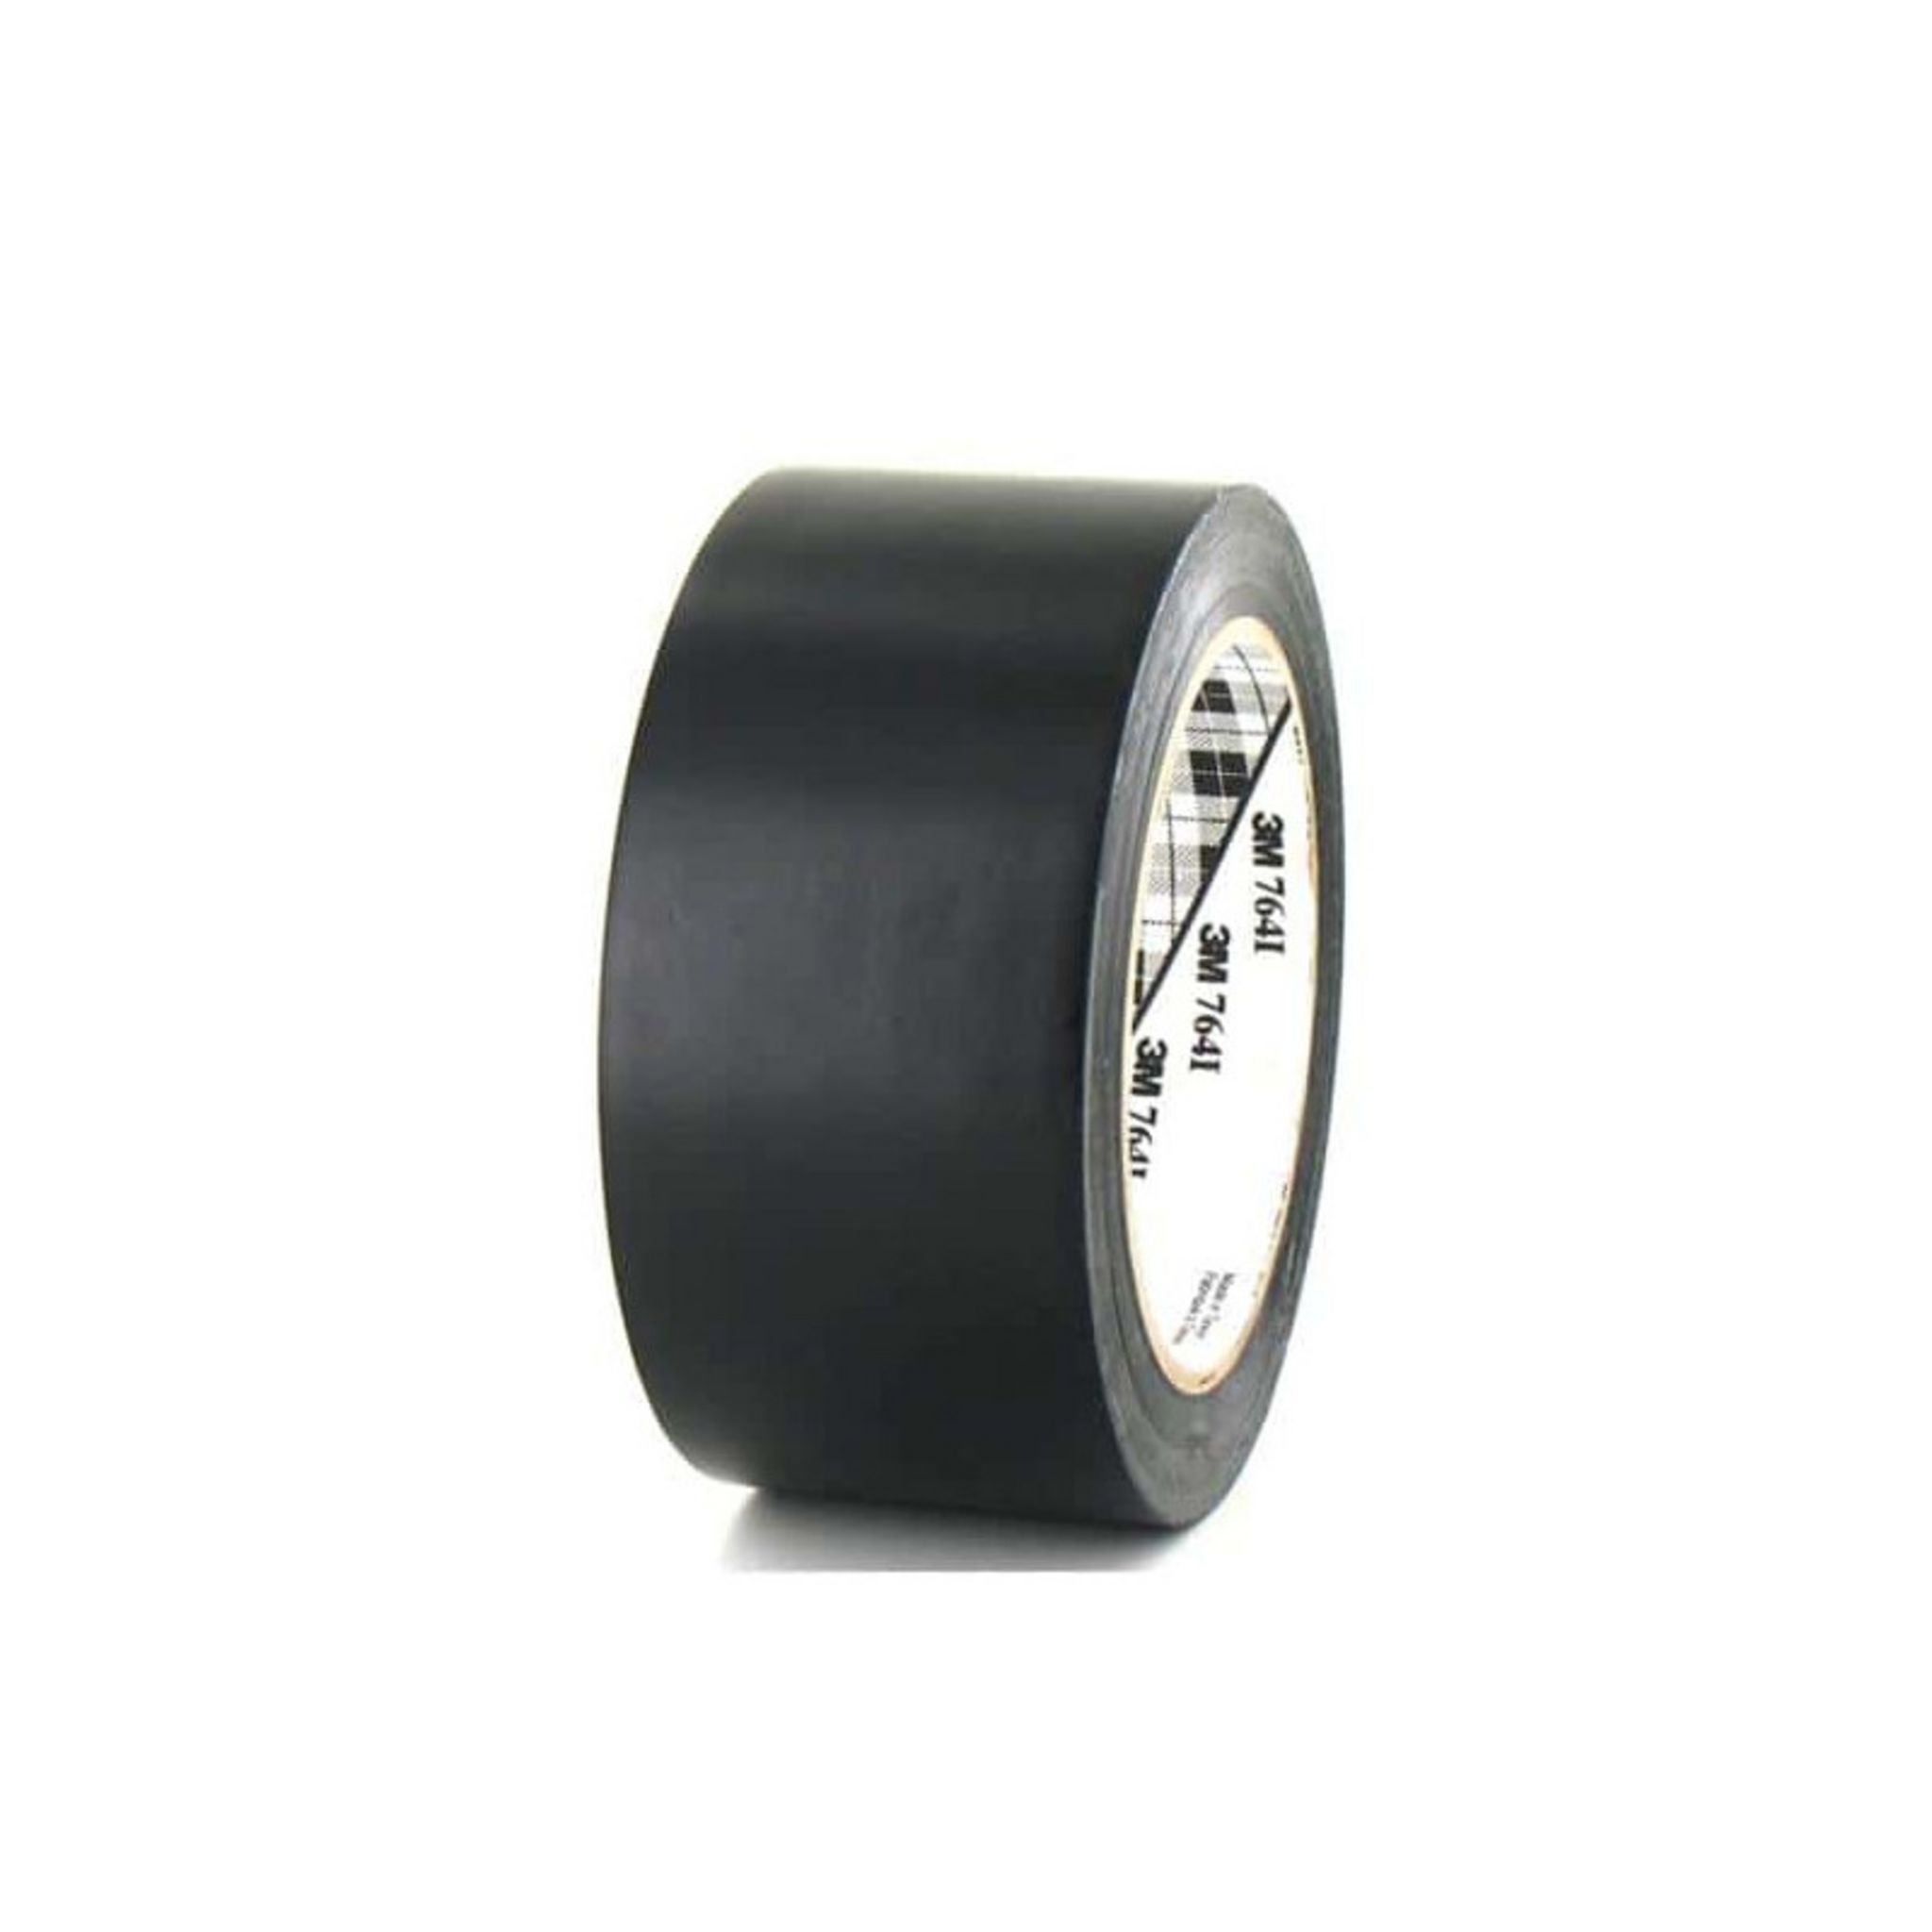 3M Ruban adhésif polyvalent en PVC souple 764i 50,8mmx33 noir